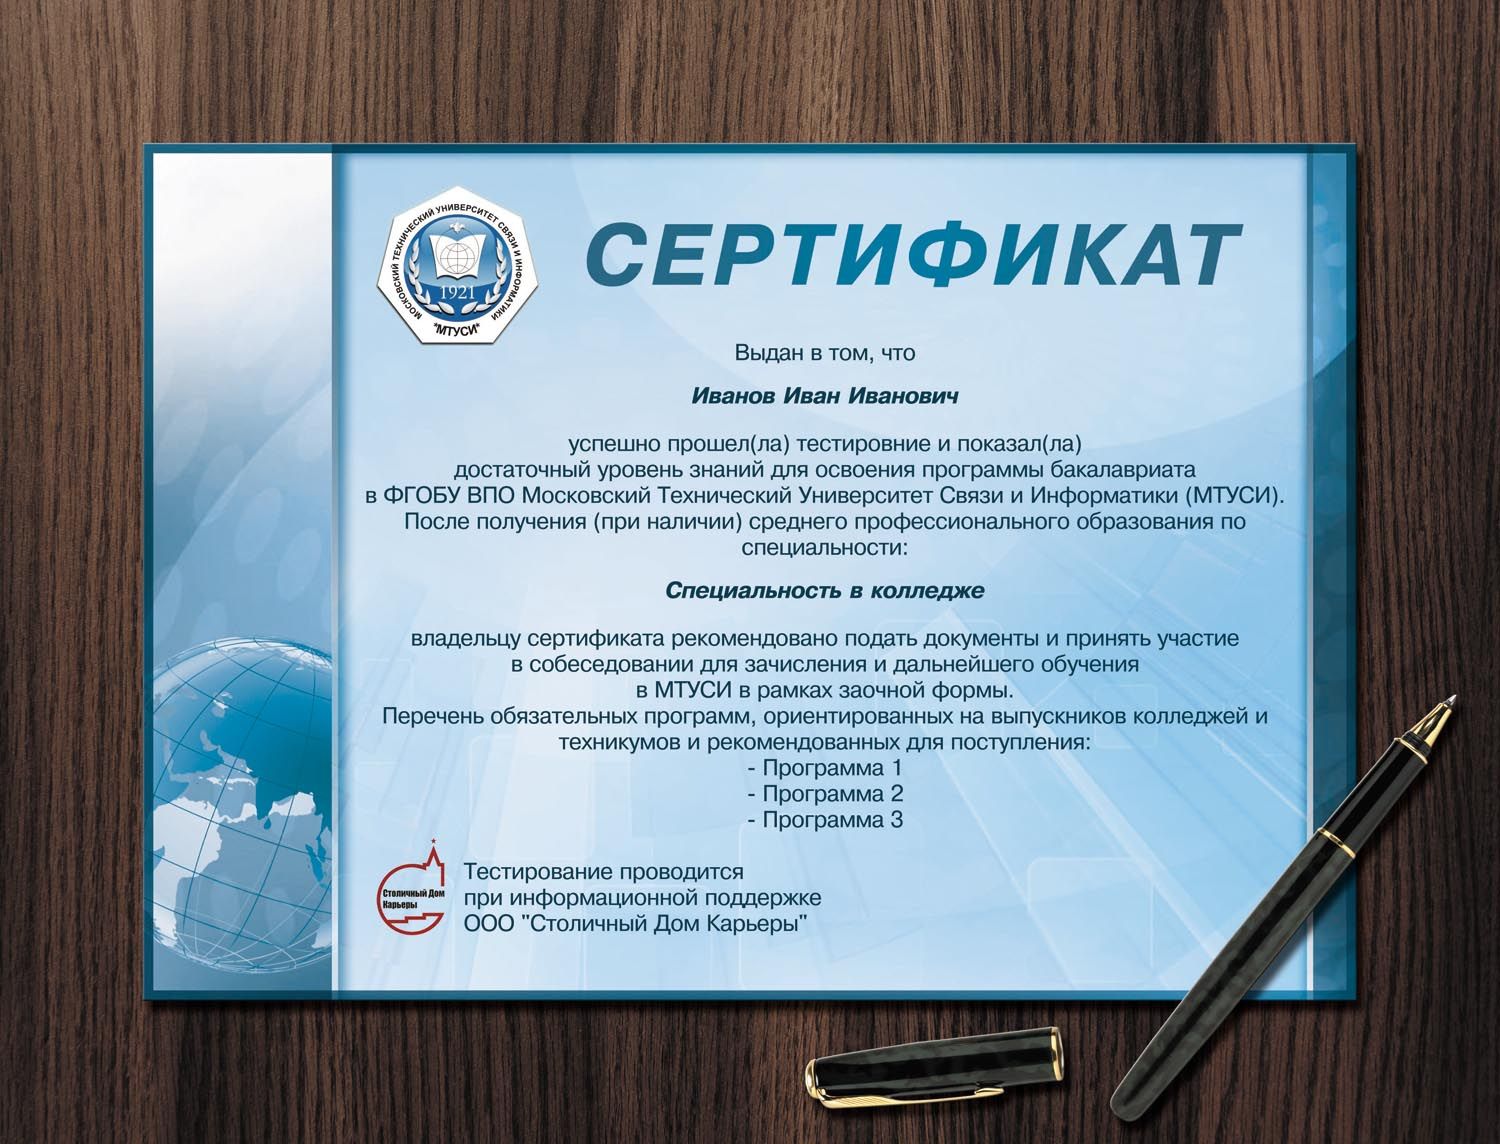 Сертификат для университета МТУСИ - дизайнер GoldenIris